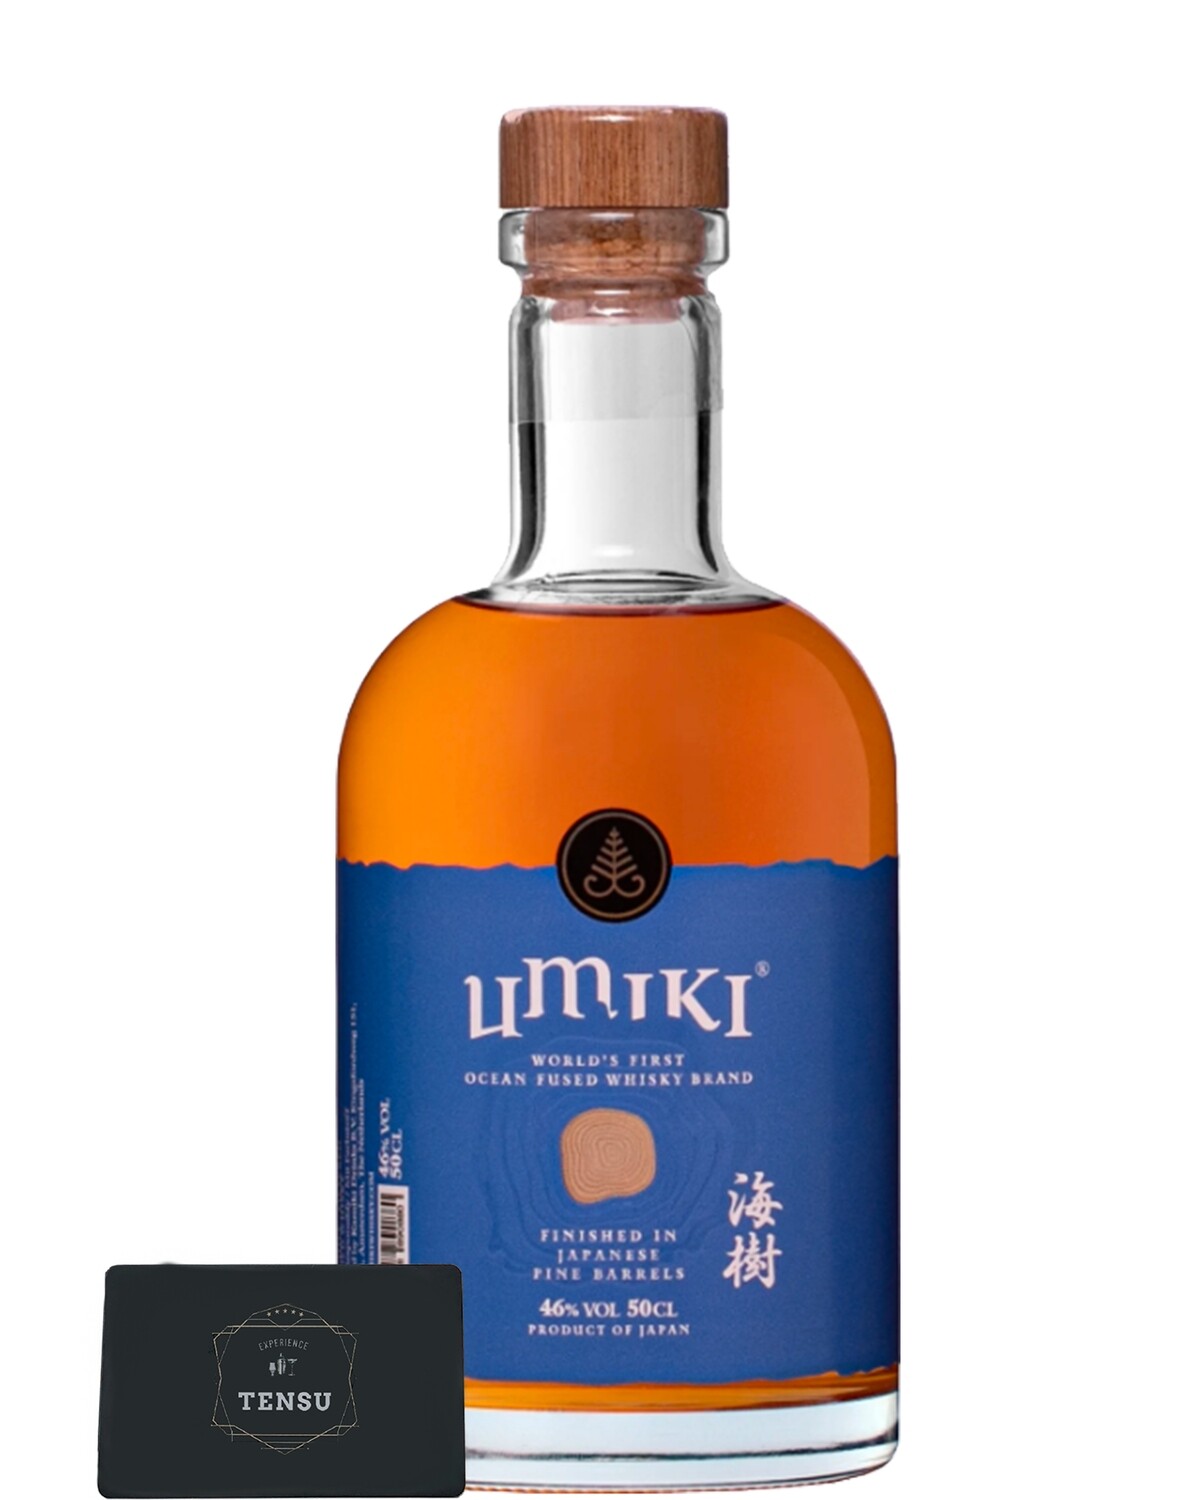 Umiki Ocean Fused Whisky (2021) Japanese Pine Barrel Finish 46.0 "OB"